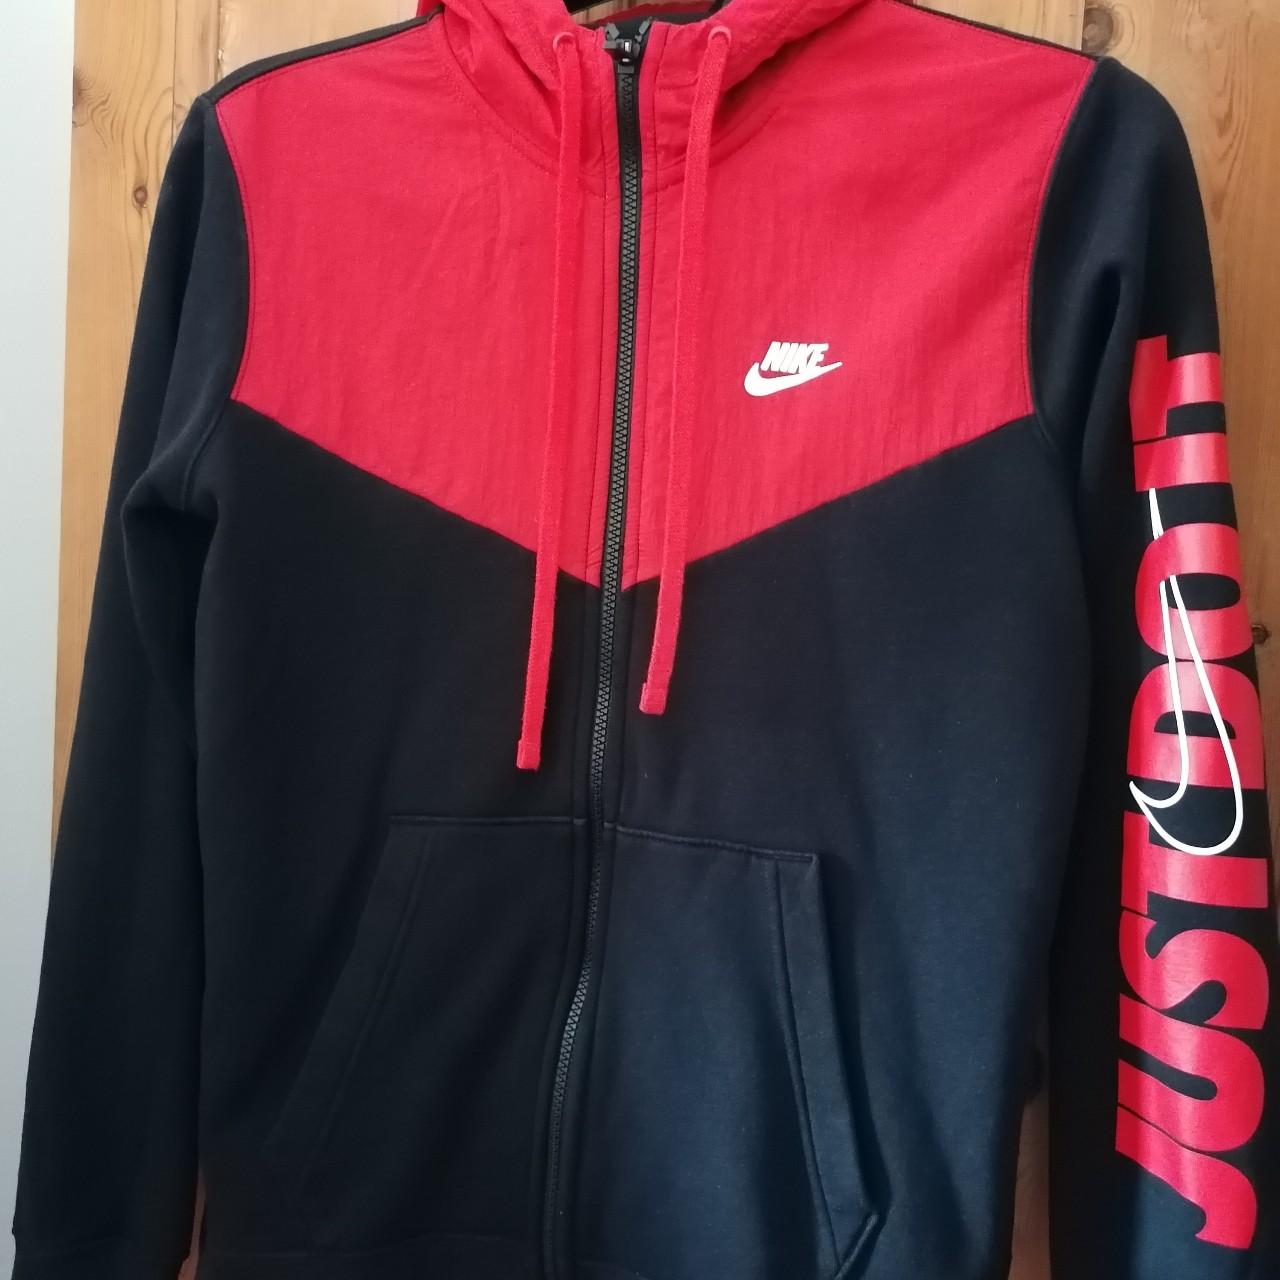 Nike just it hoodie Rare Black red Size... - Depop